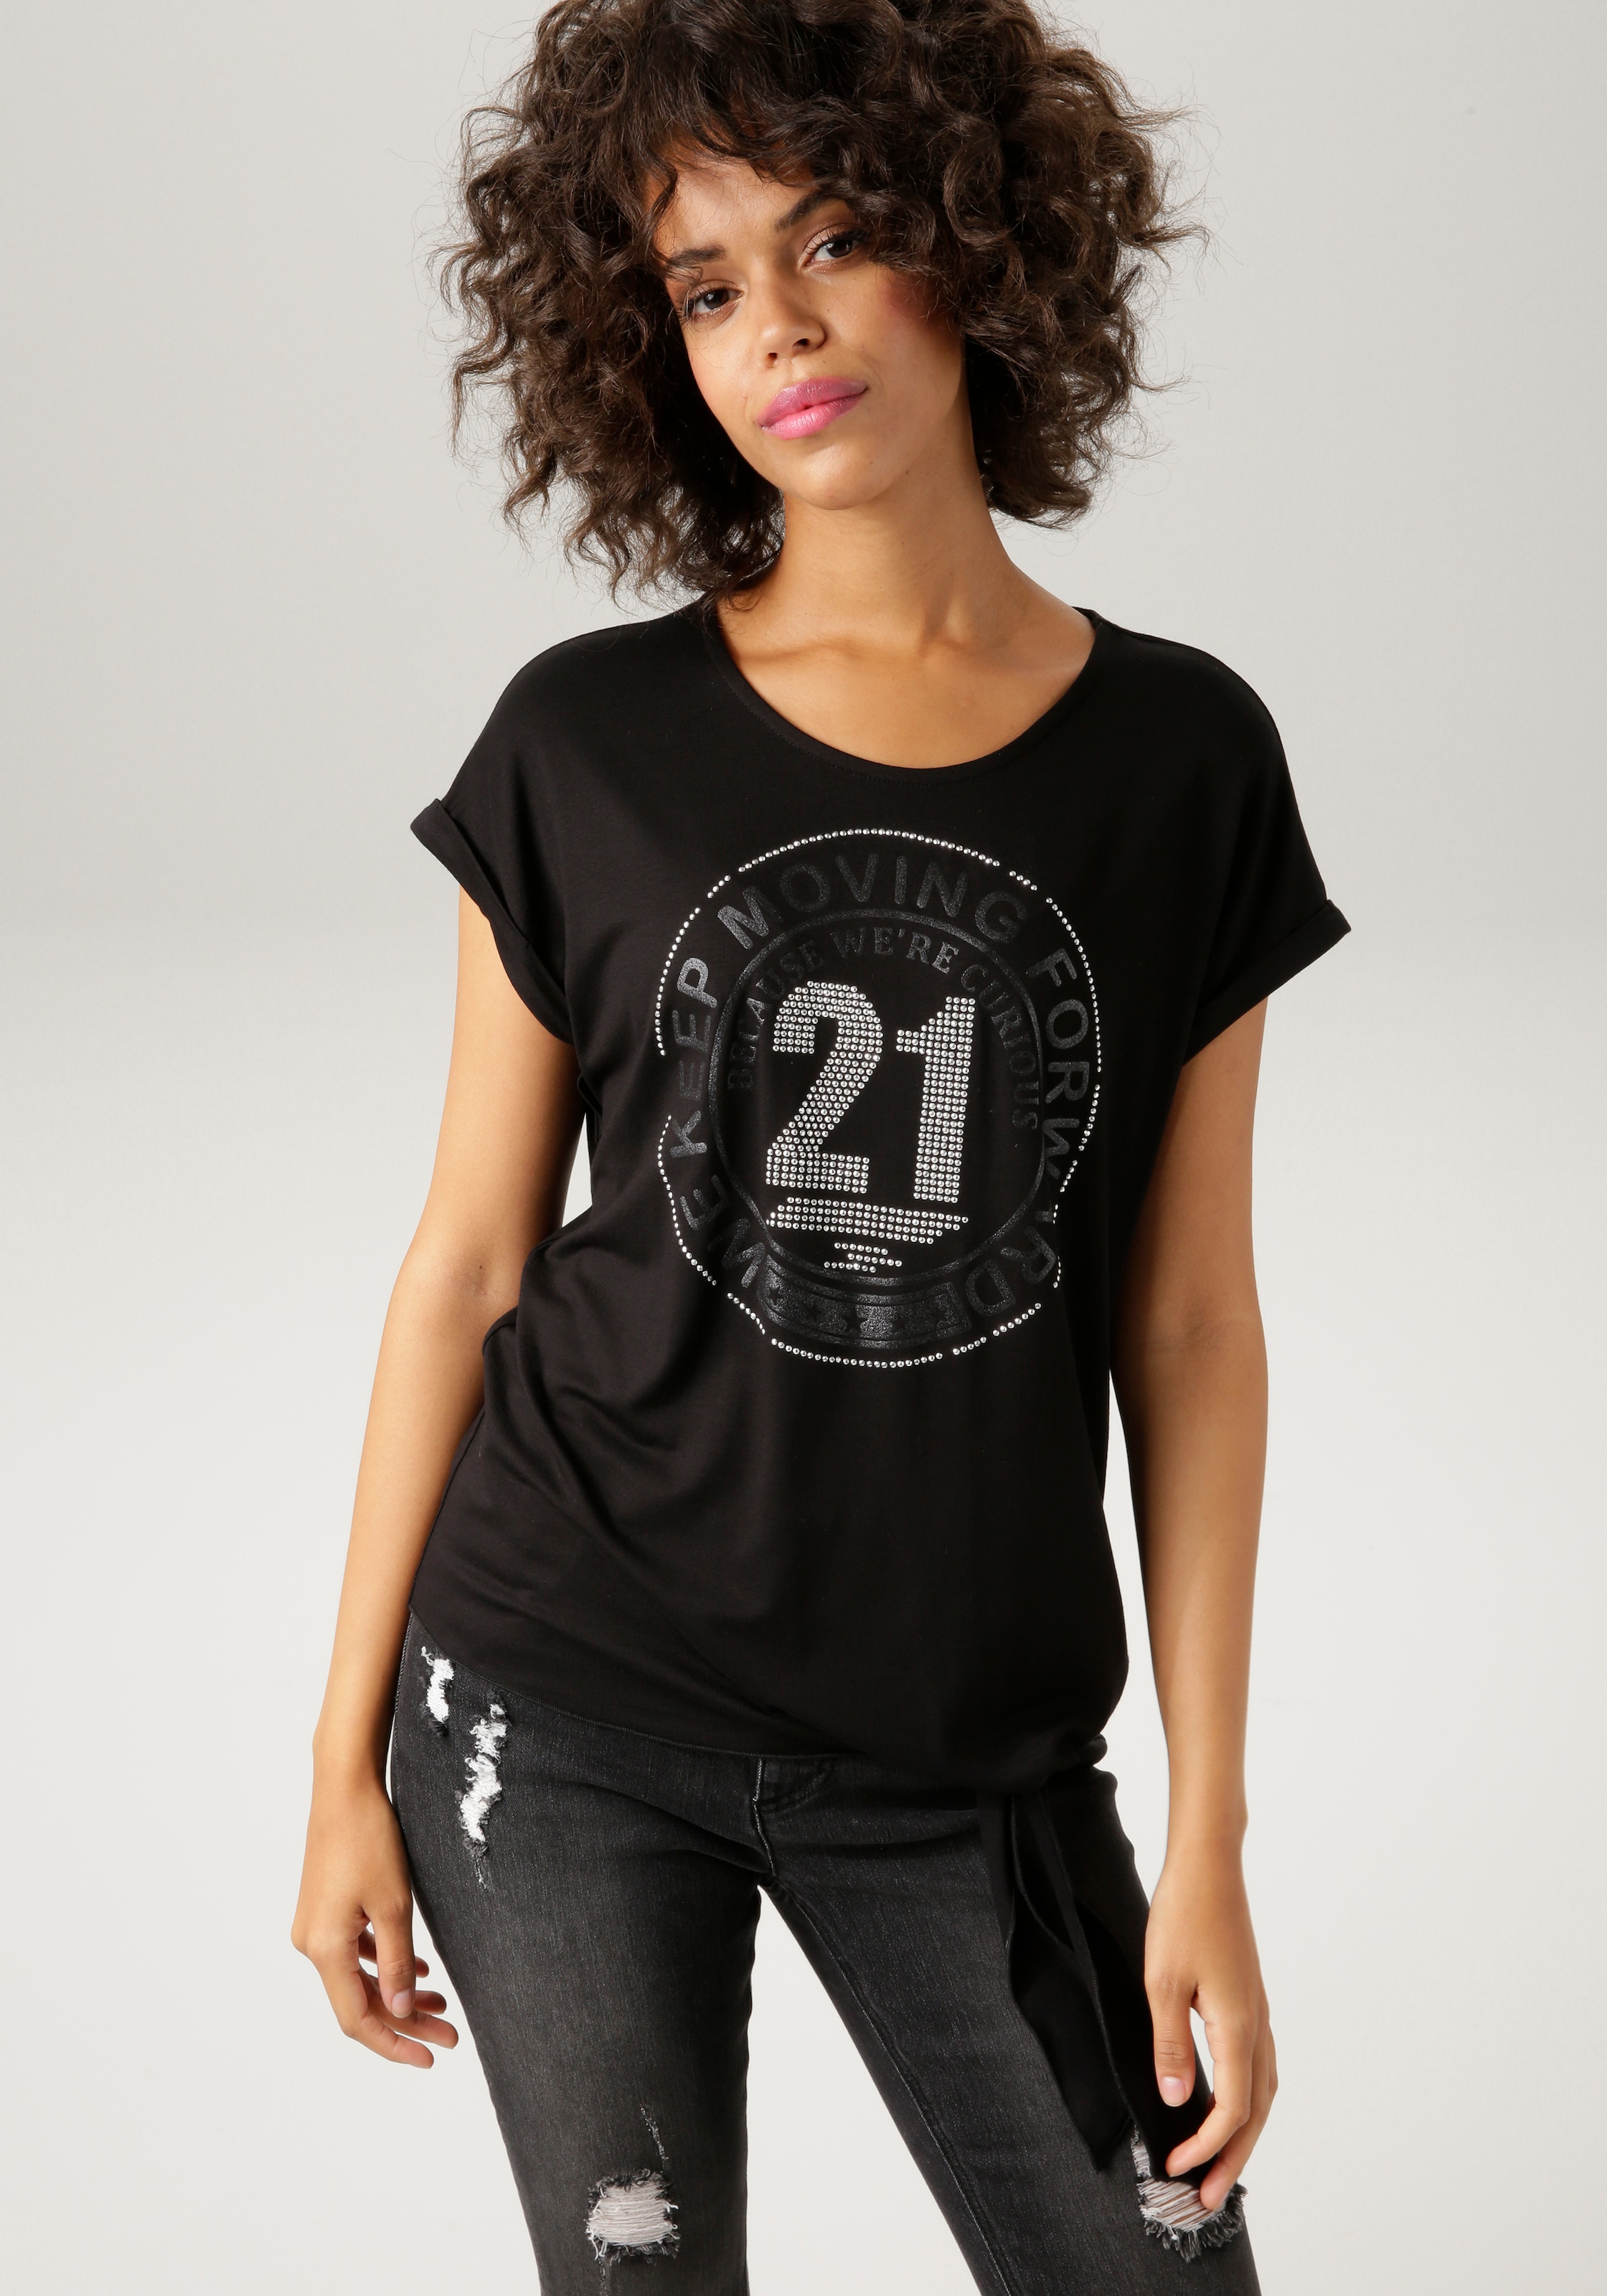 im bestellen T-Shirt, OTTO Online und Aniston silberfarbenen mit Frontdruck Glitzersteinchen CASUAL Shop